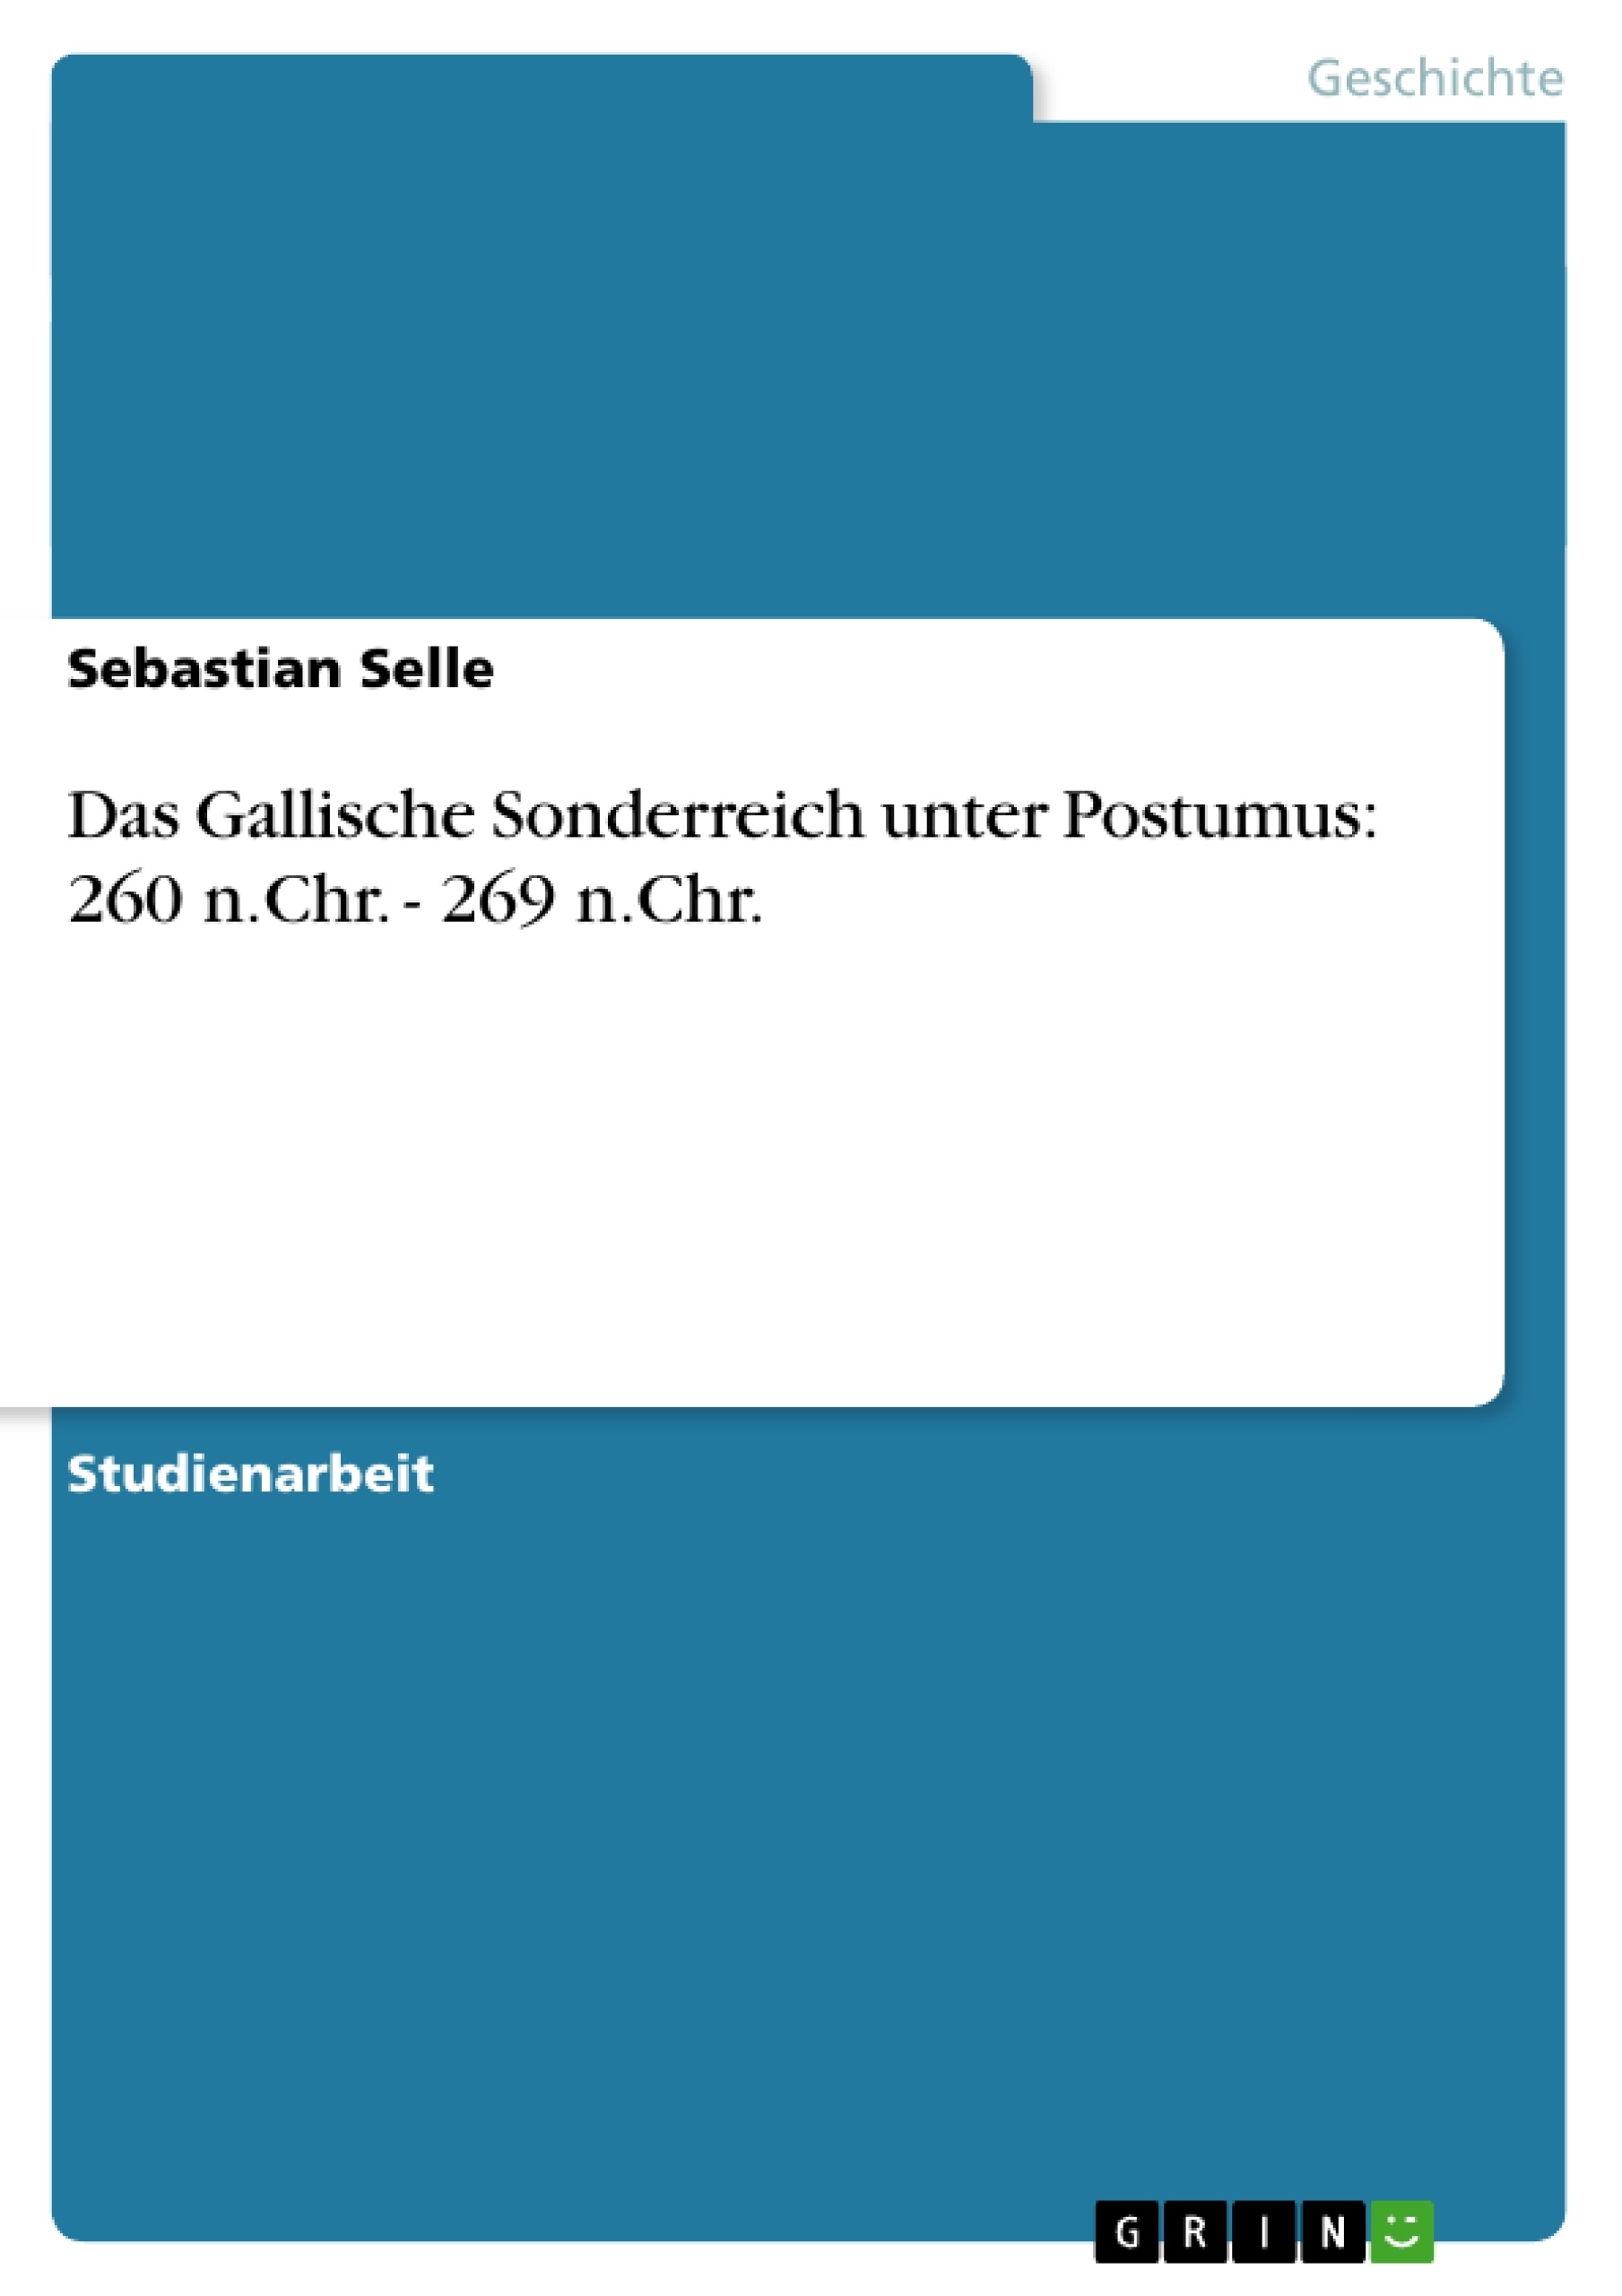 Titre: Das Gallische Sonderreich unter Postumus: 260 n.Chr. - 269 n.Chr.